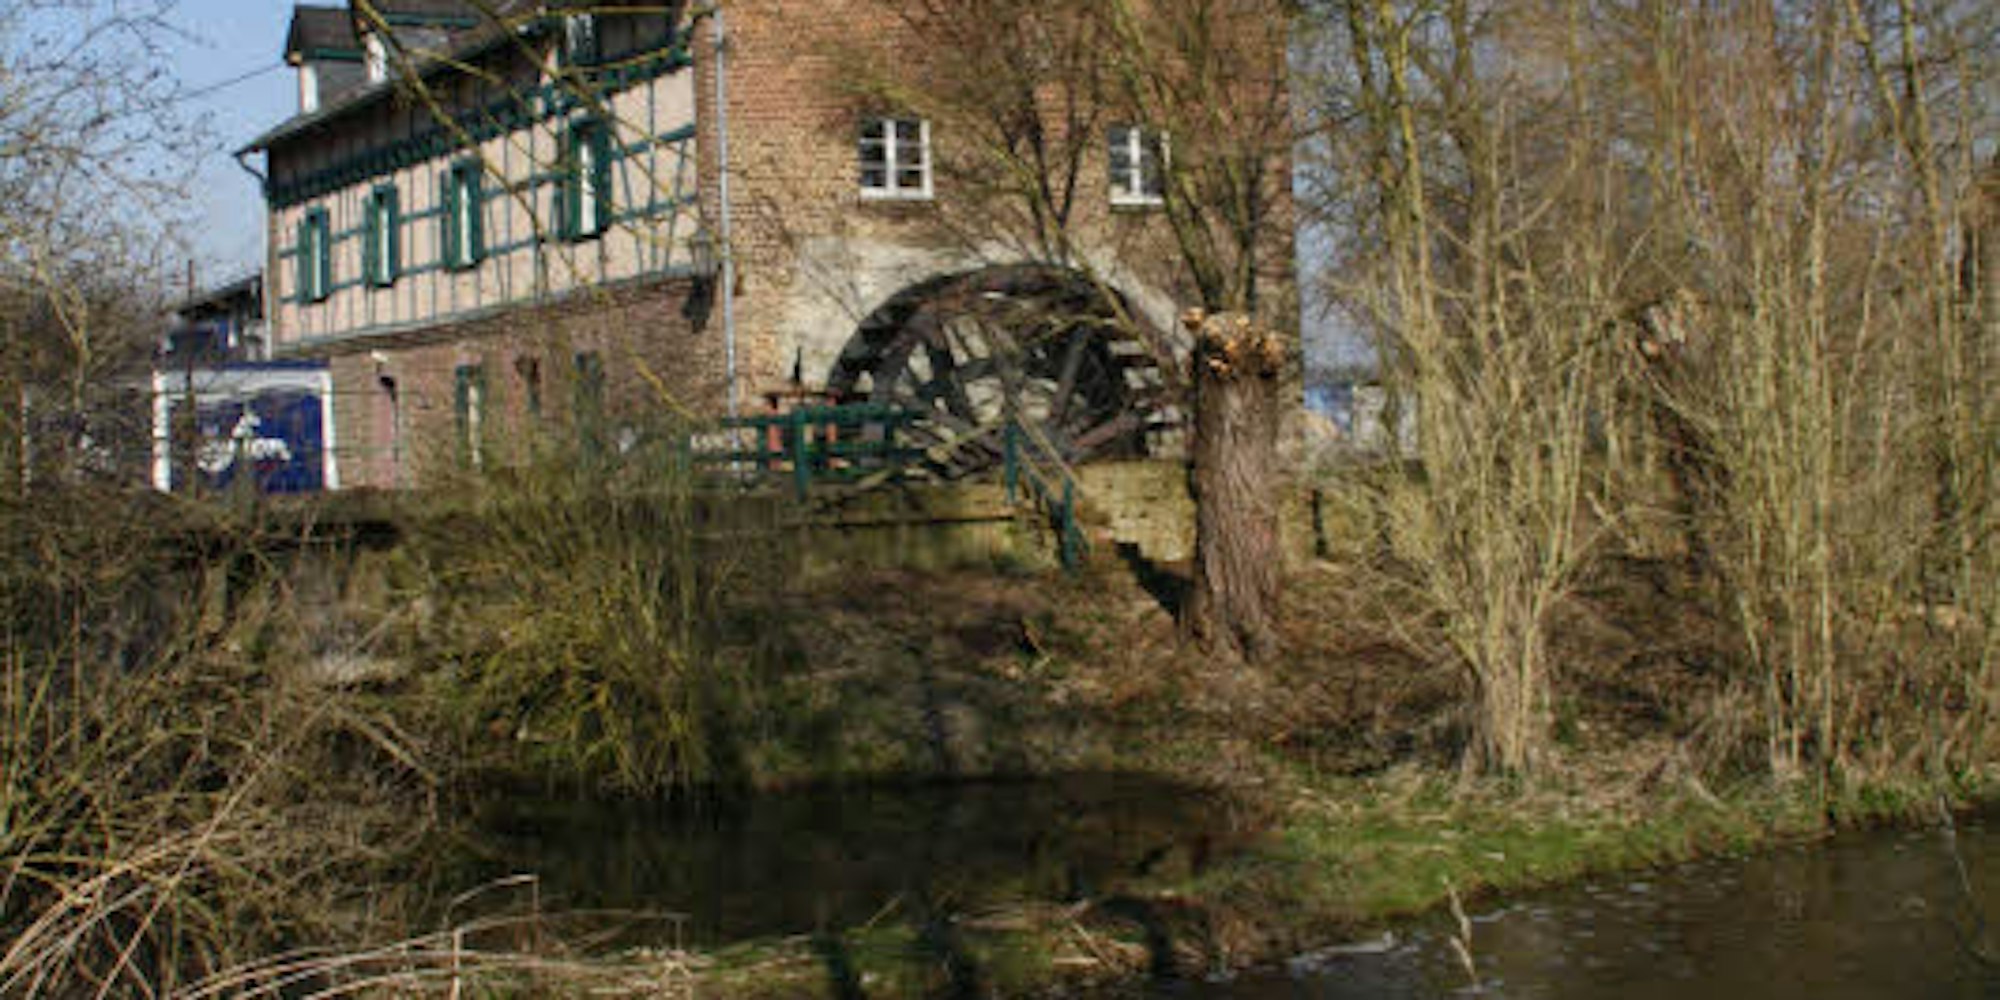 Die Zukunft der Gymnicher Mühle ist ungewiss. Nach ergebnislosen Verhandlungen hat der Mühlenverband Rhein-Erft-Rur nun einen Insolvenzantrag gestellt.